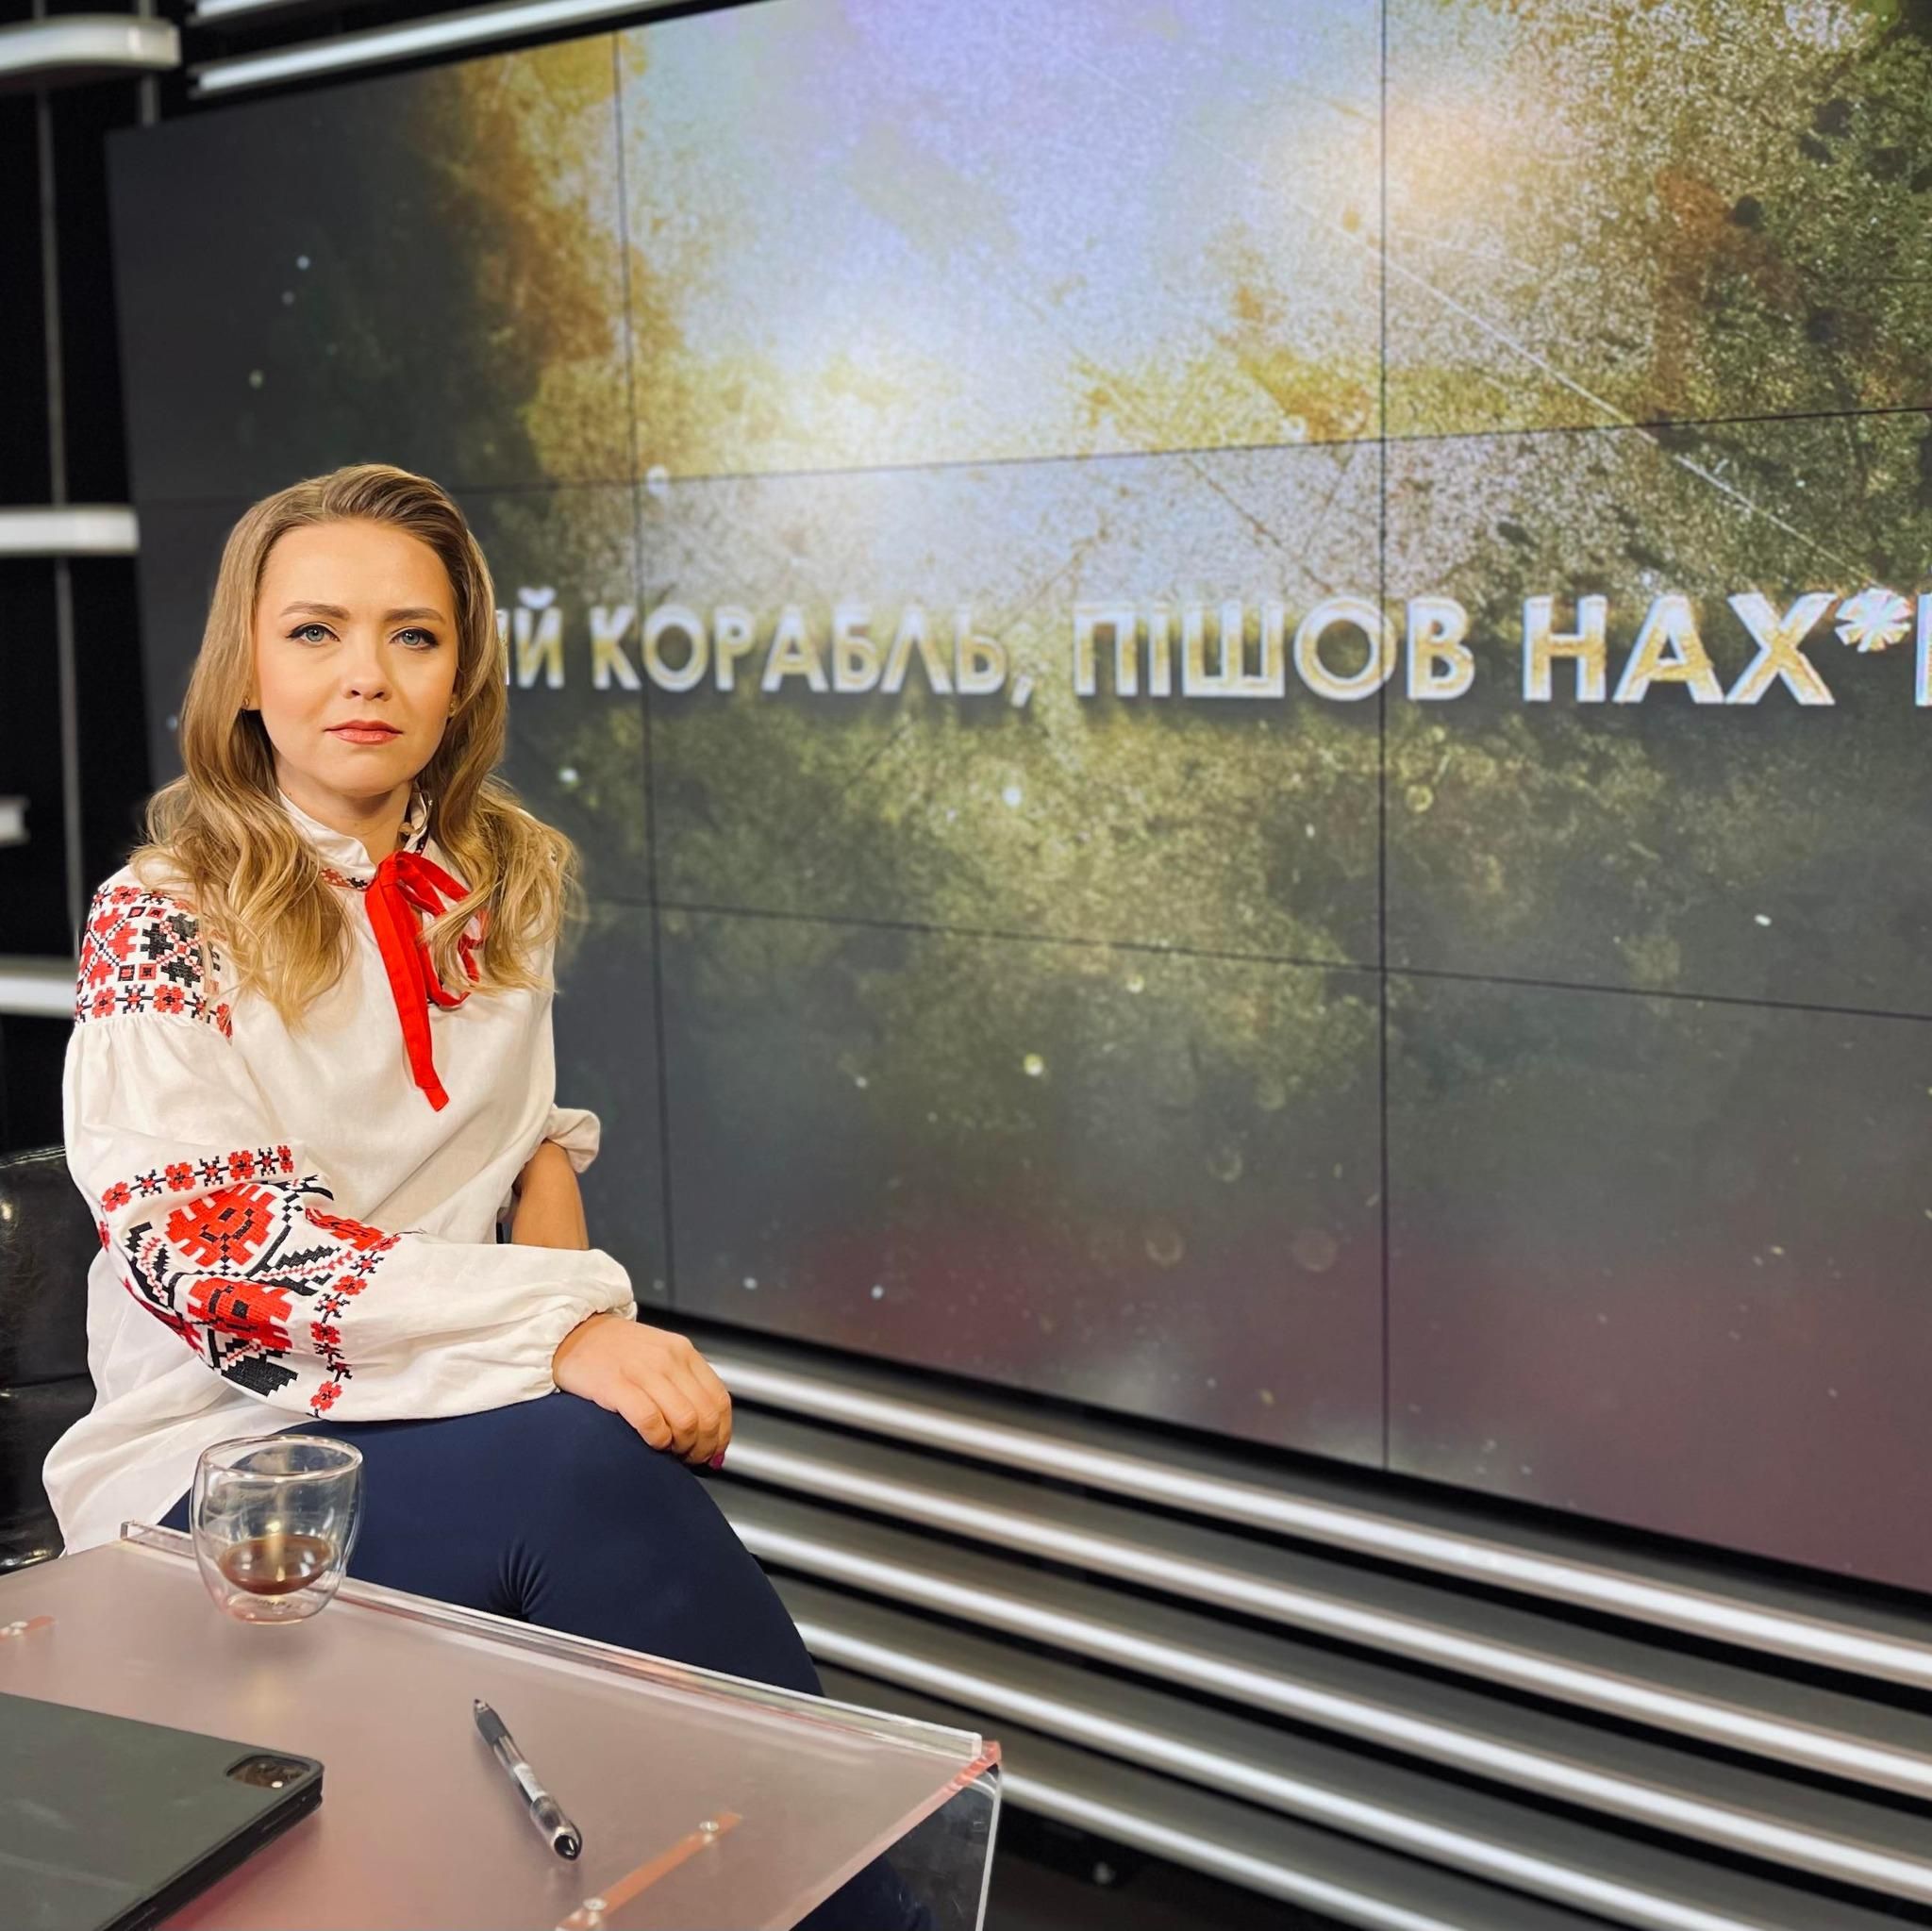 "Можете пересидіти, поки не зміниться режим":  Соляр закликала росіян здаватися в полон - 24 Канал